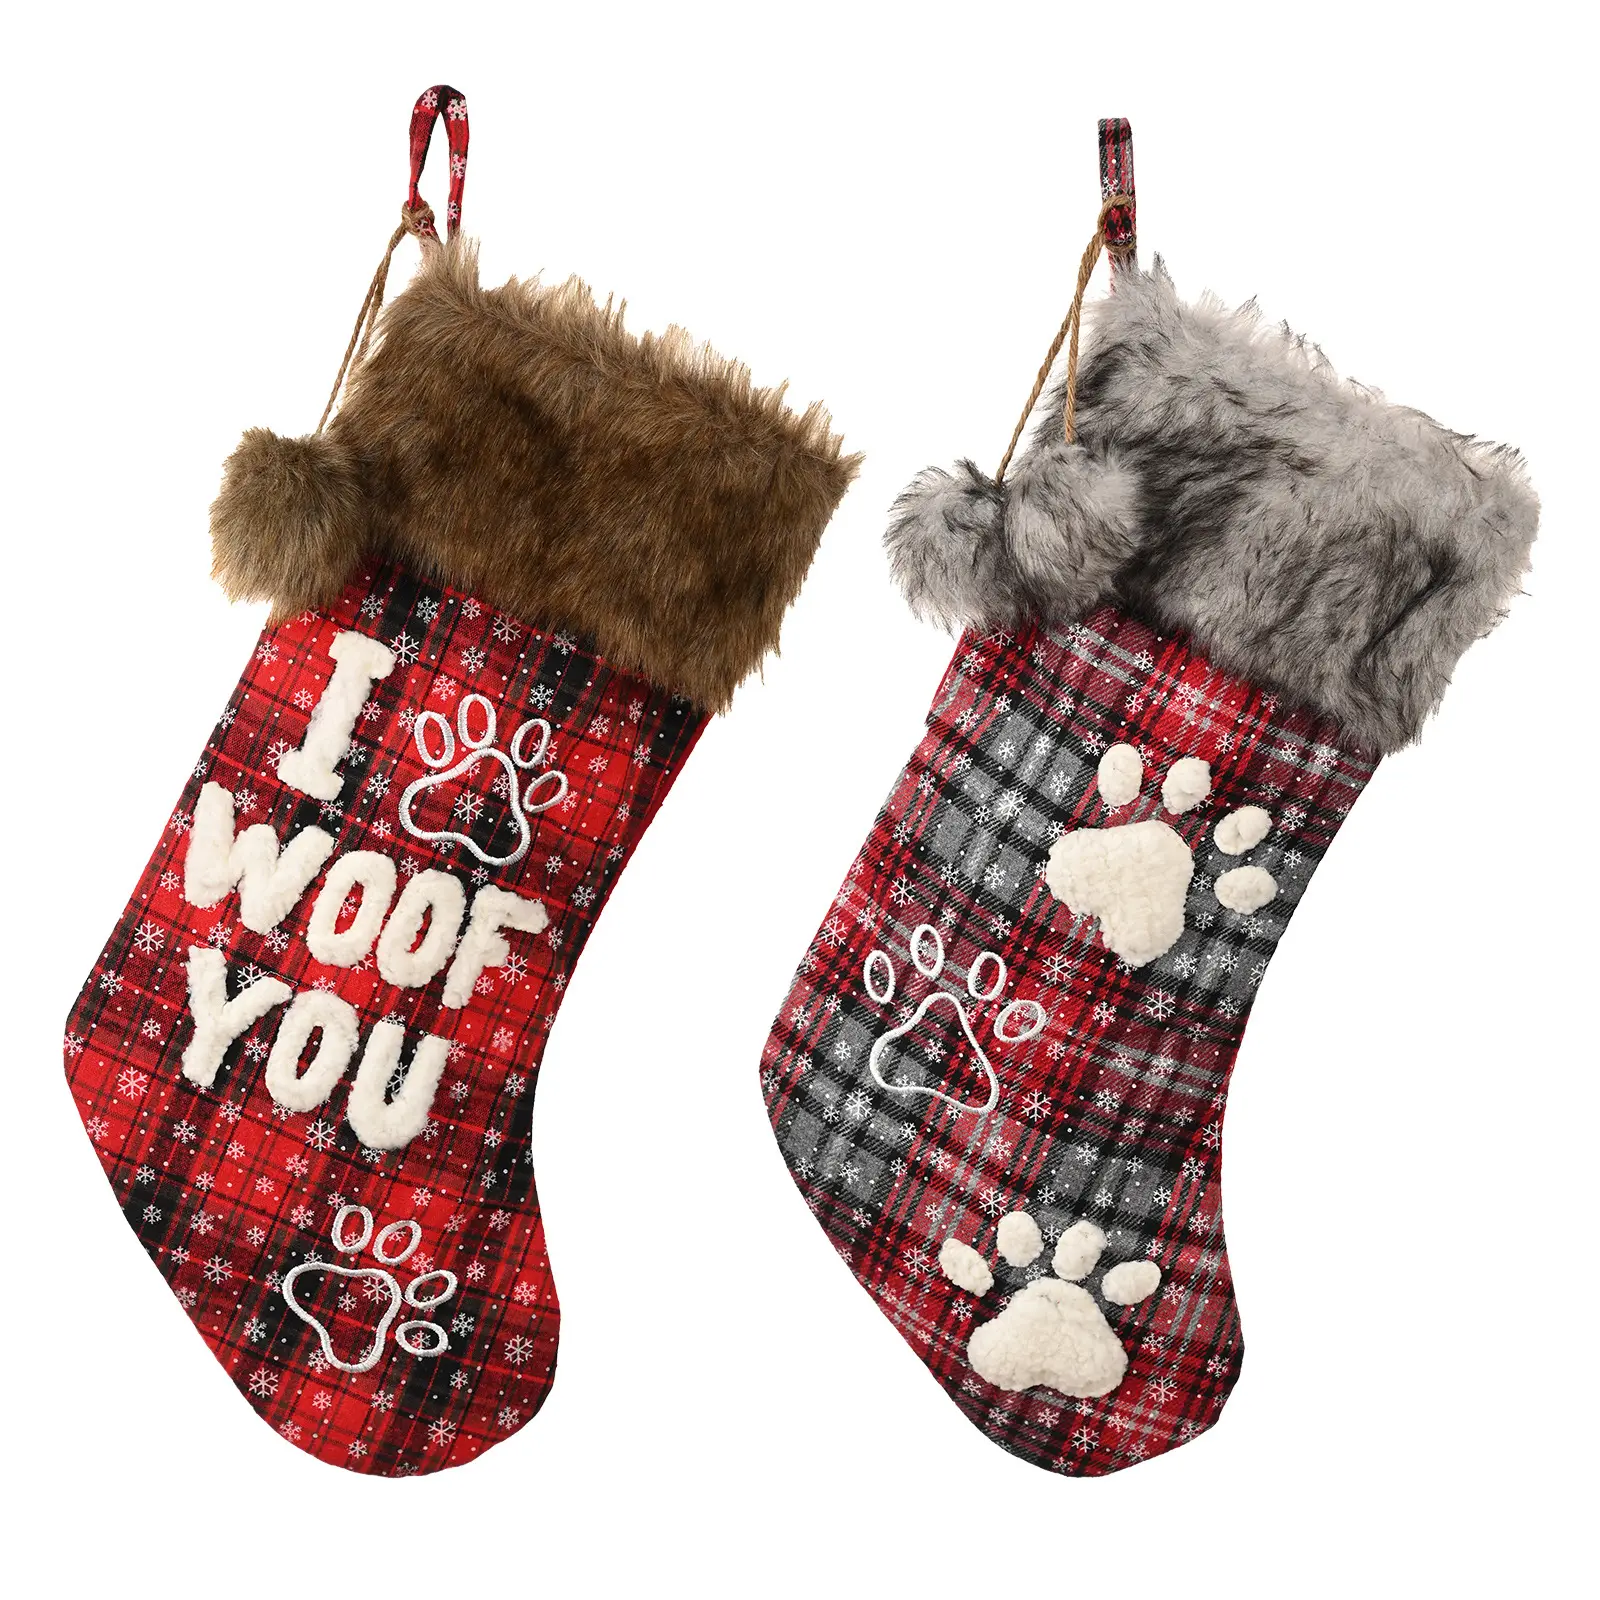 Fournitures de décoration de Noël pour animaux de compagnie ornements bas de Noël pour animaux de compagnie sacs-cadeaux de Noël chien bas de Noël pour broderie